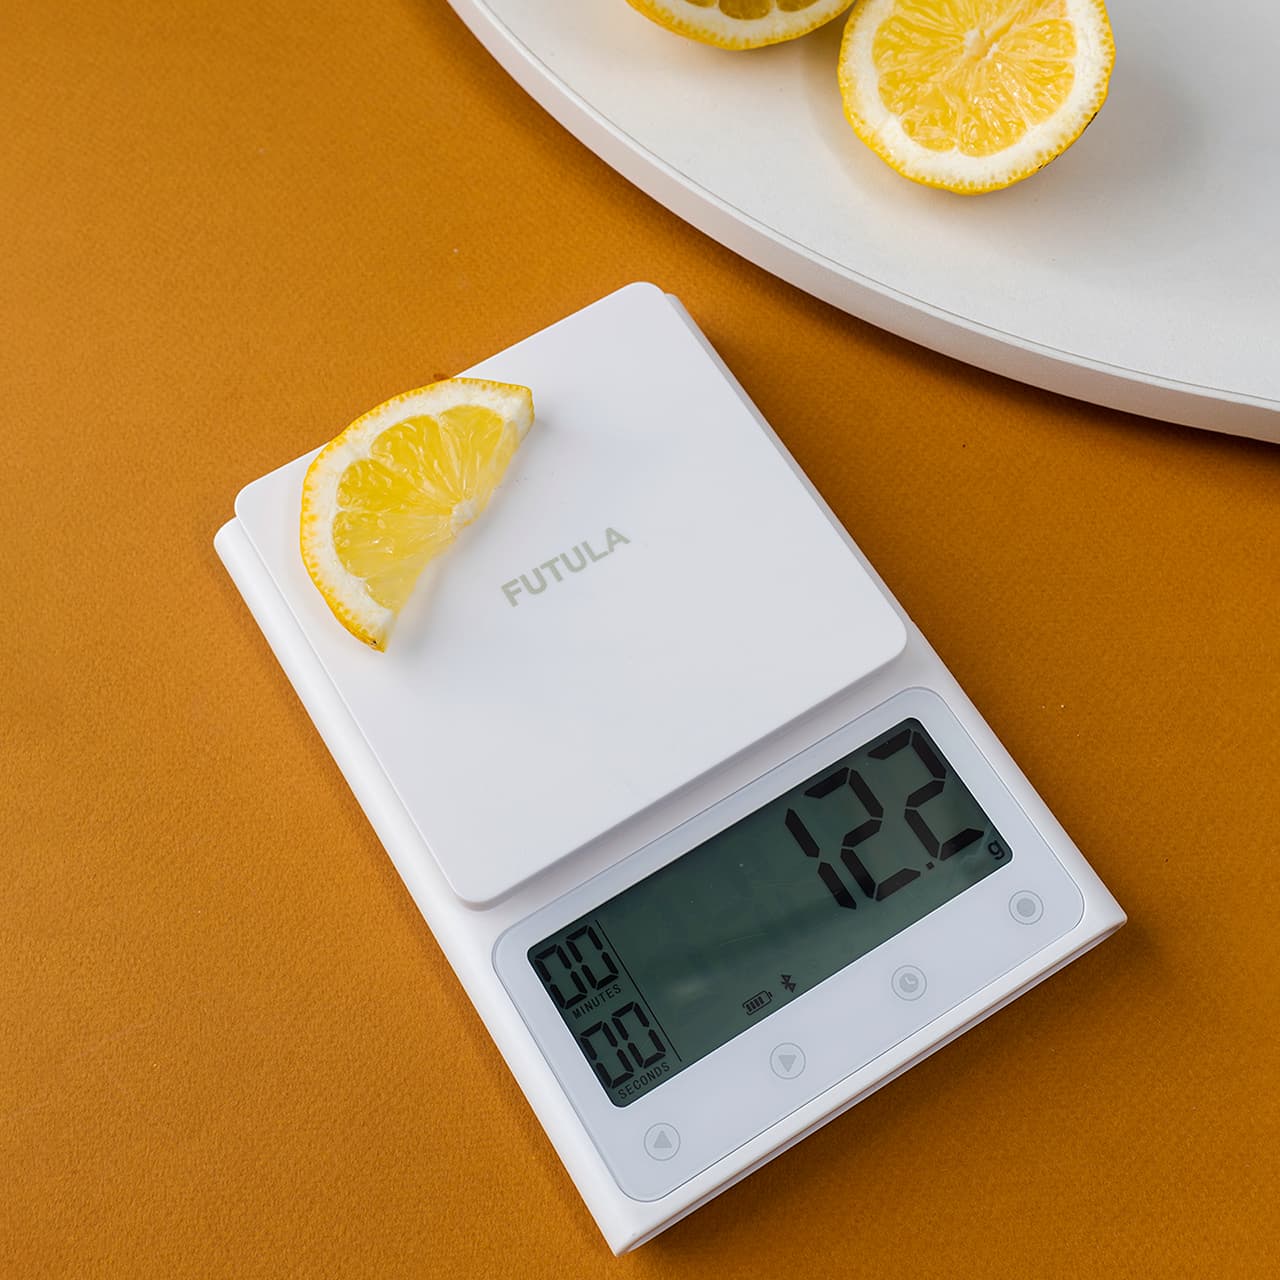 Купить кухонные весы Futula Kitchen Scale 3 белого цвета у официального дилера в России со склада в Москве